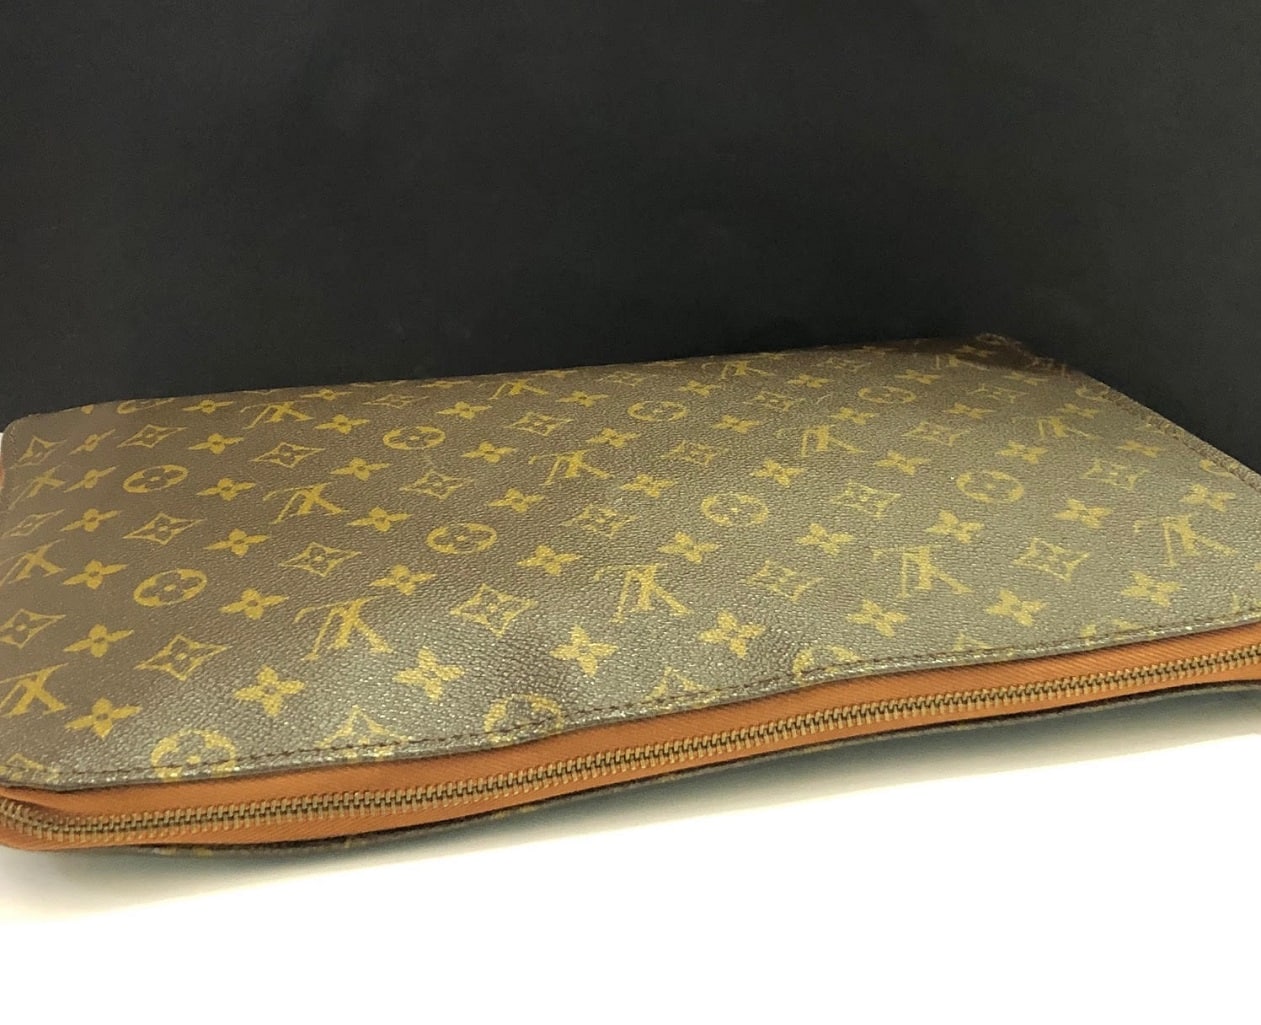 Louis Vuitton Monogram Men's Women's Carryall Laptop Travel Briefcase  Clutch Bag